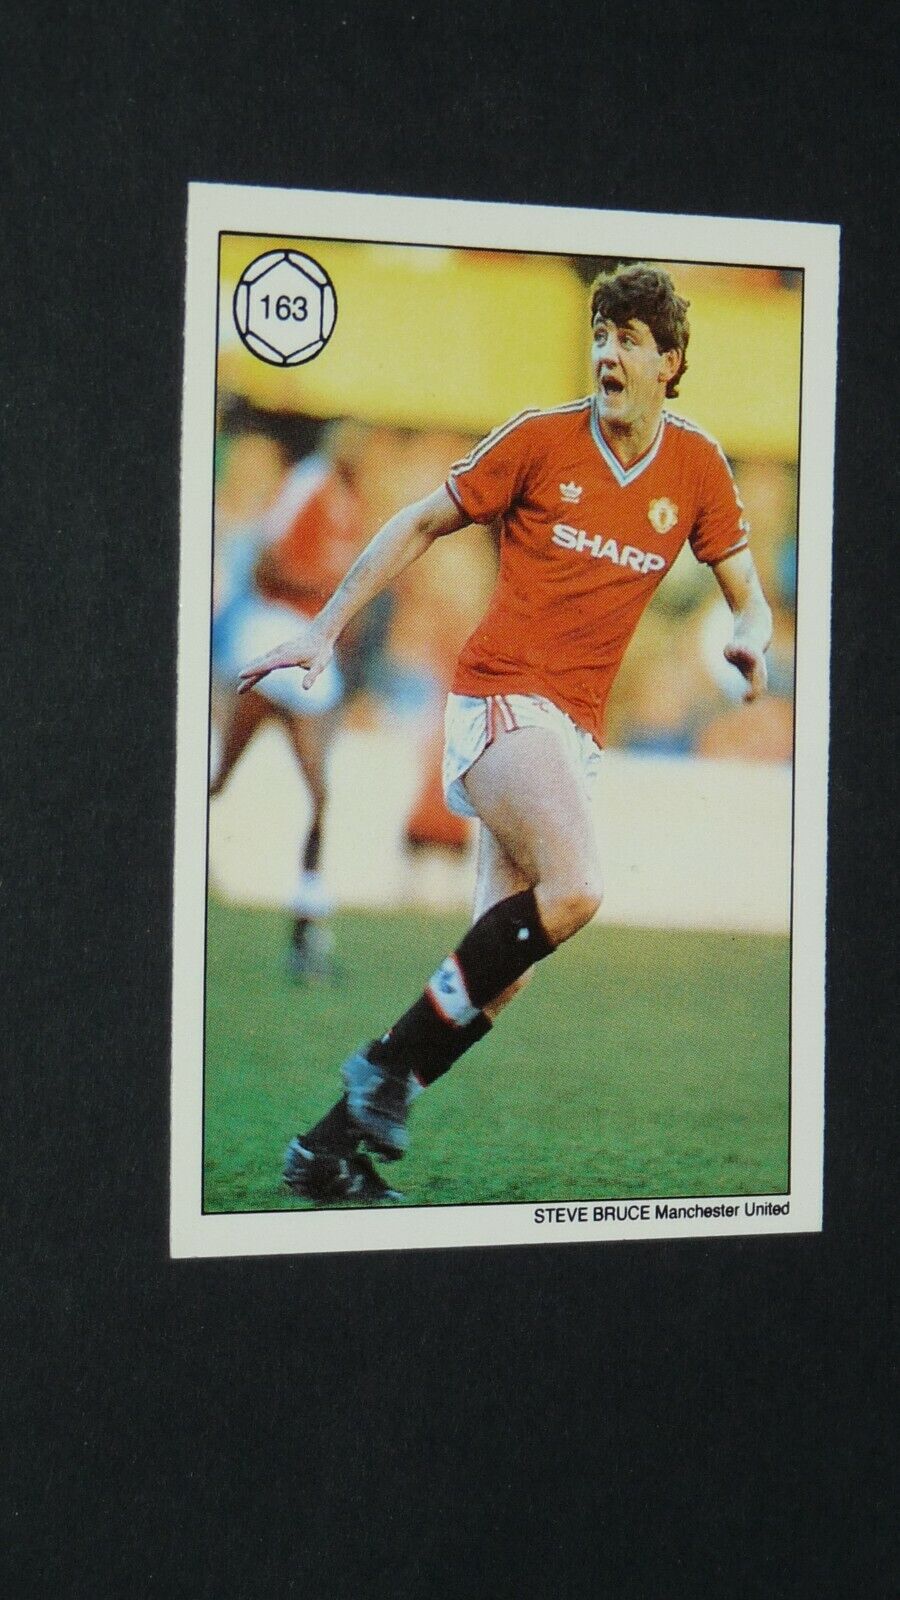 #163 STEVE BRUCE MANCHESTER UNITED FOOTBALL CARD TOPPS 1989 SAINT & GREAVSIE